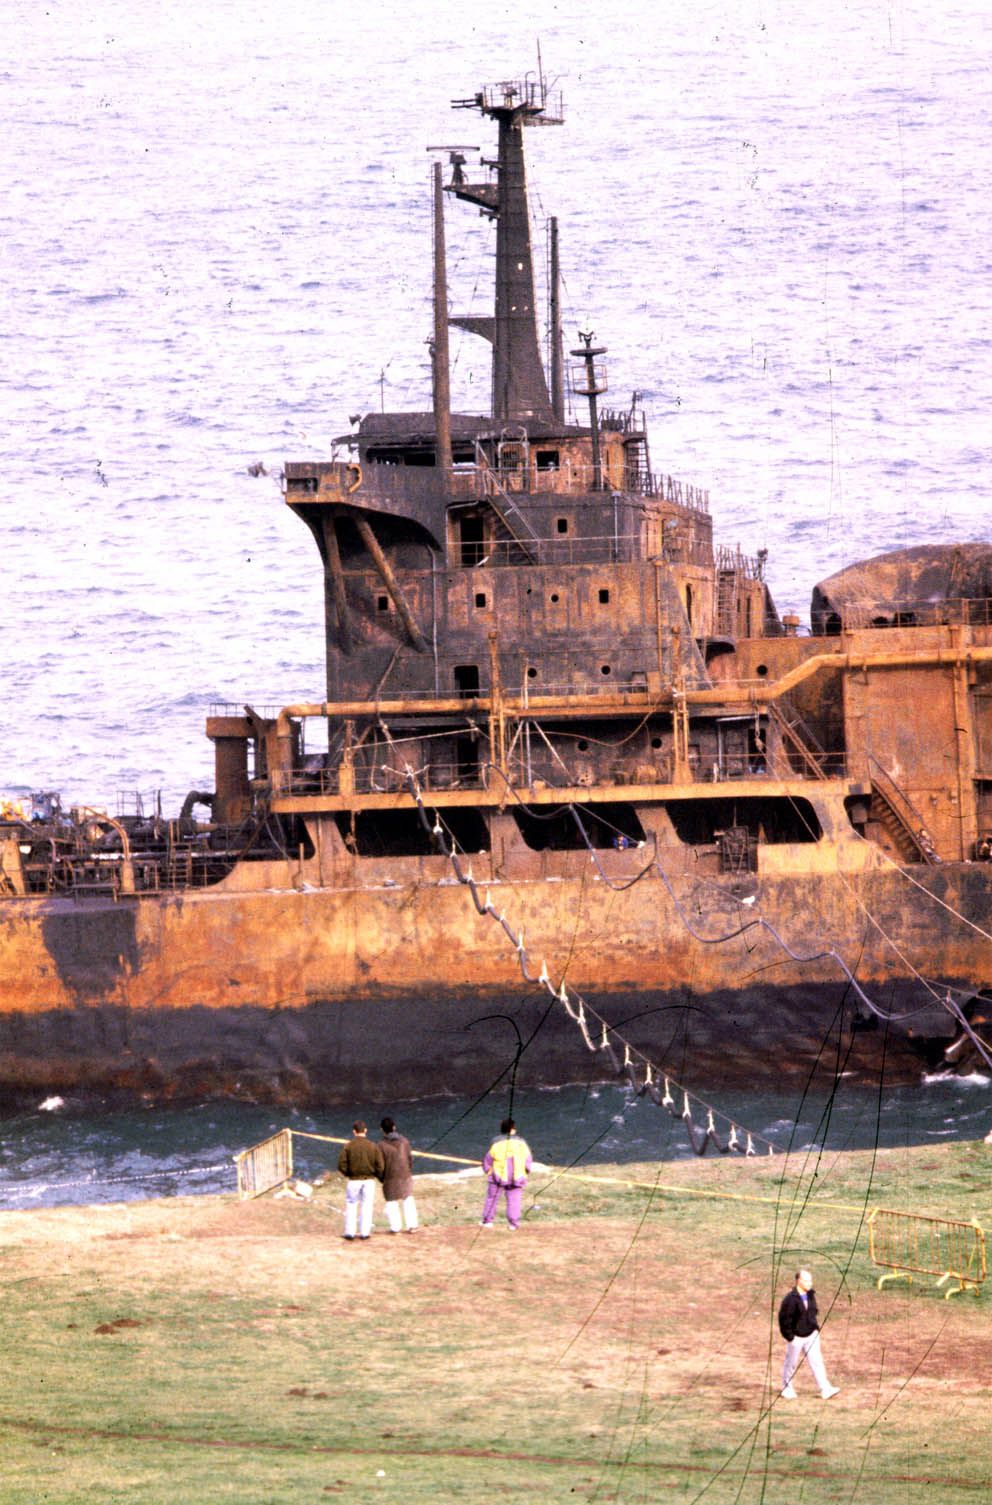 El petrolero Mar Egeo que llevaba 80000 toneladas de petroleo a la refinería de A Coruña embarrancó junto a la torre de Hércules partiéndose en dos y provocando una gran marea negra 1992 Magar (2).jpg